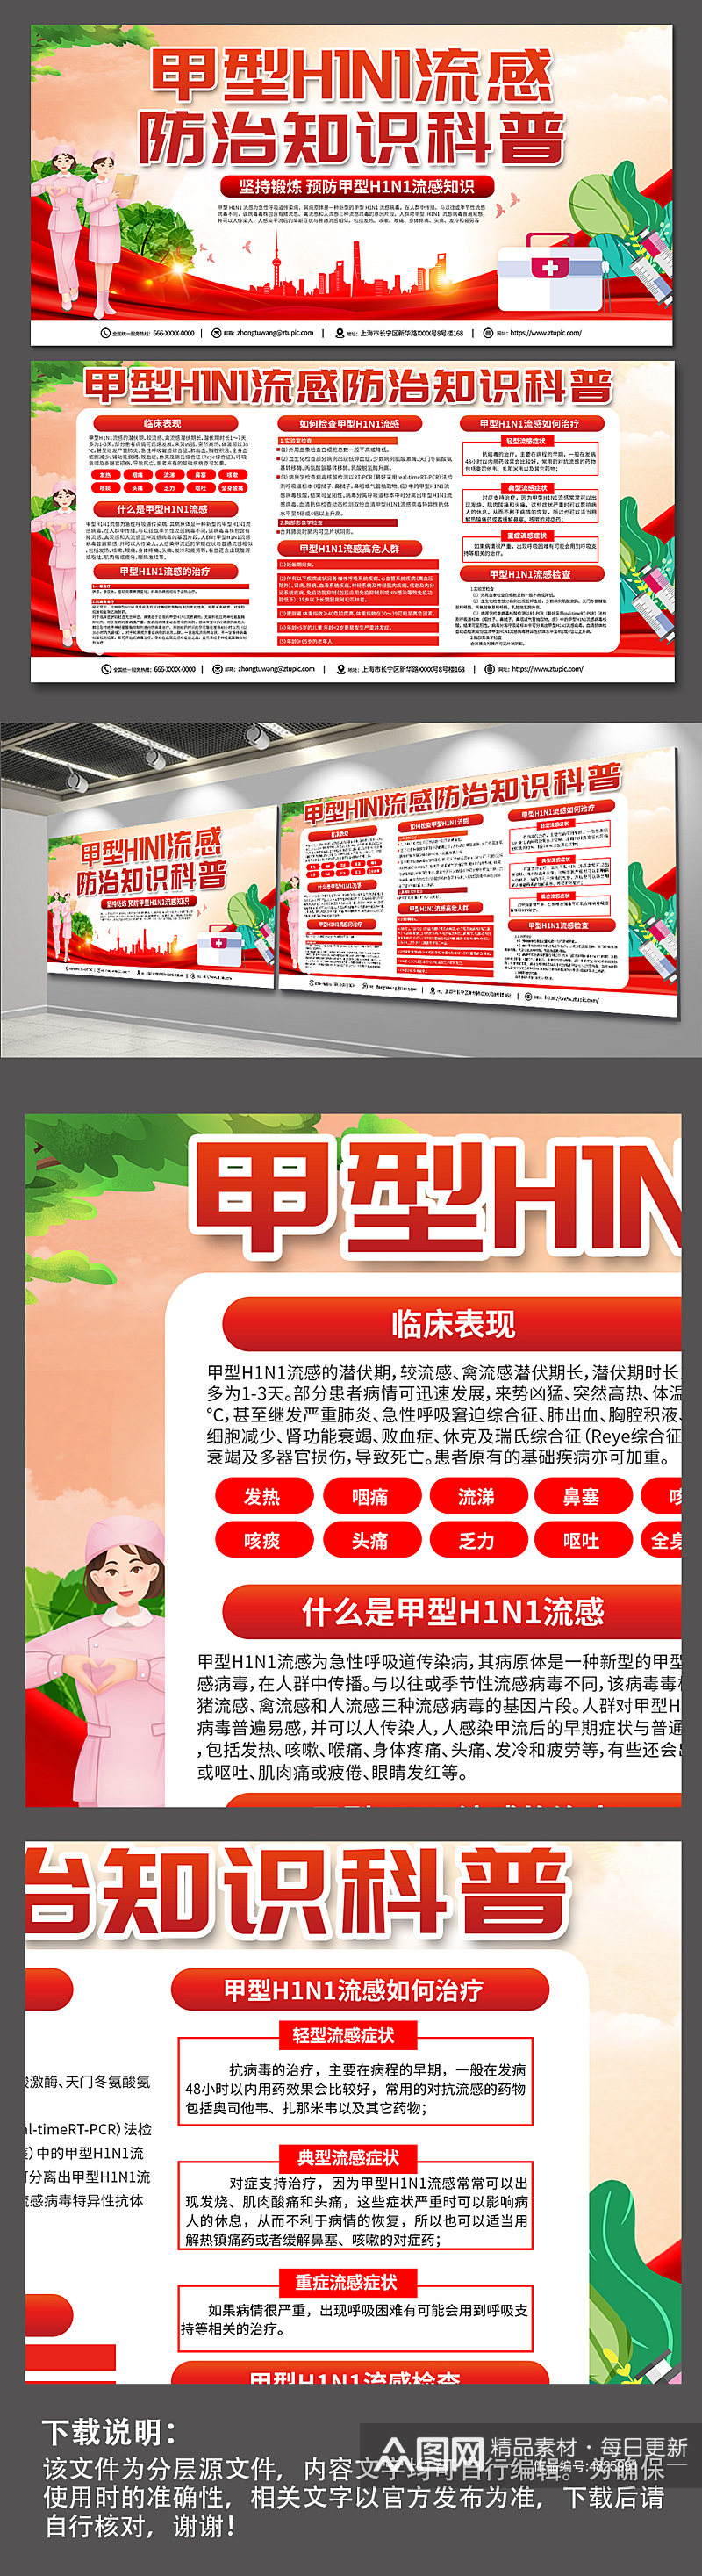 红色大气甲型H1N1流感防治知识医疗展板素材